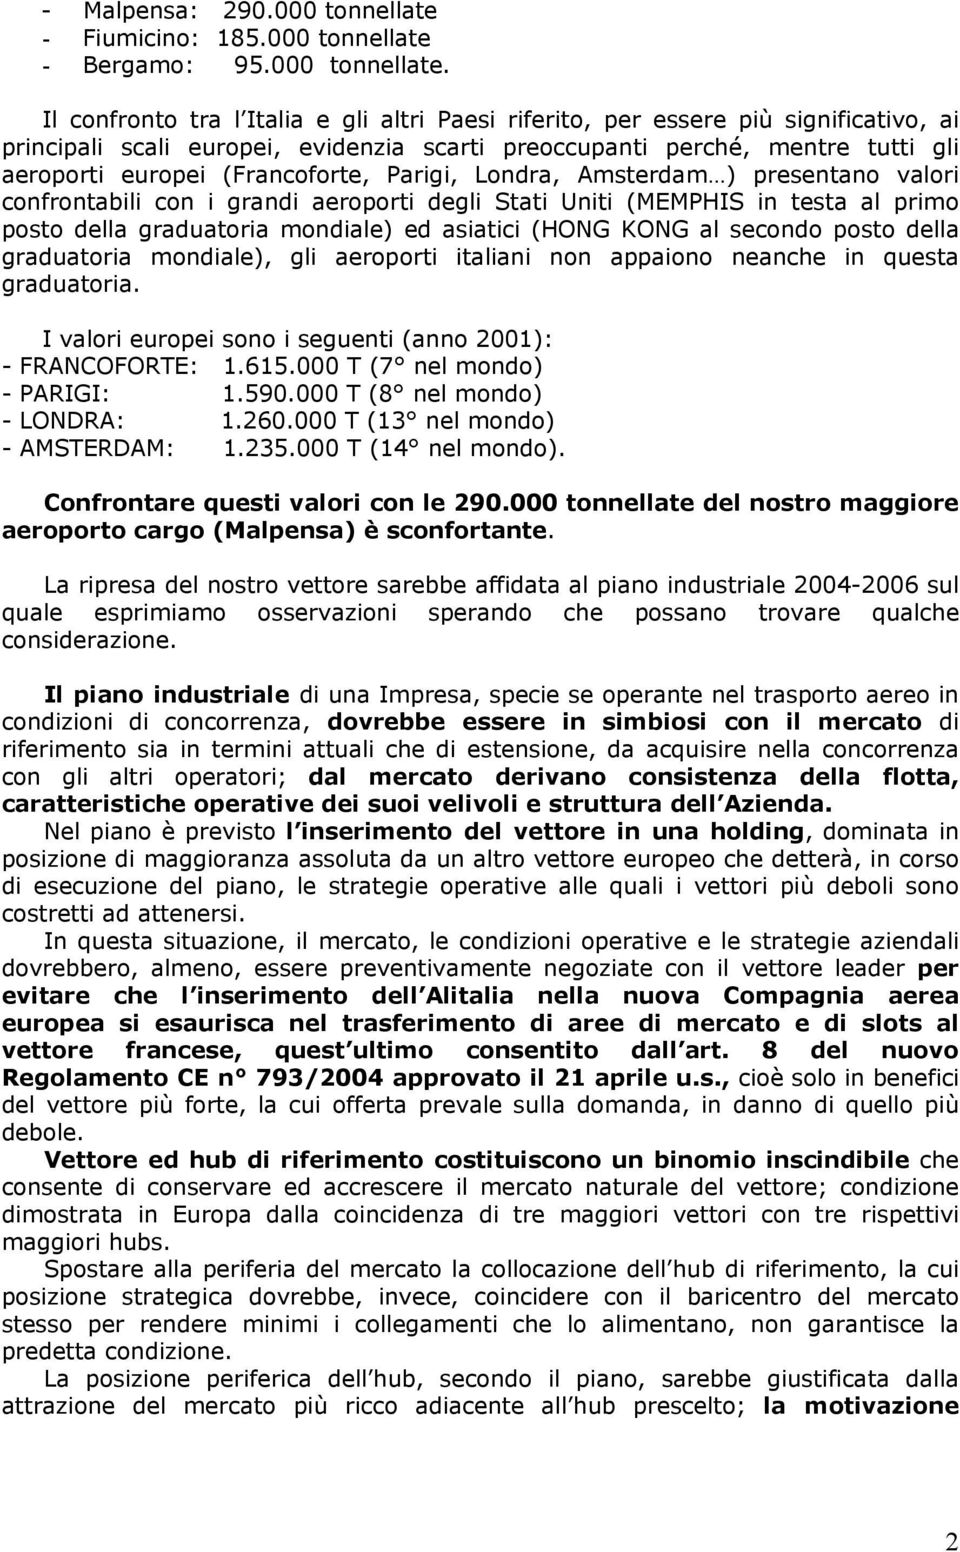 - Bergamo: 95.000 tonnellate.